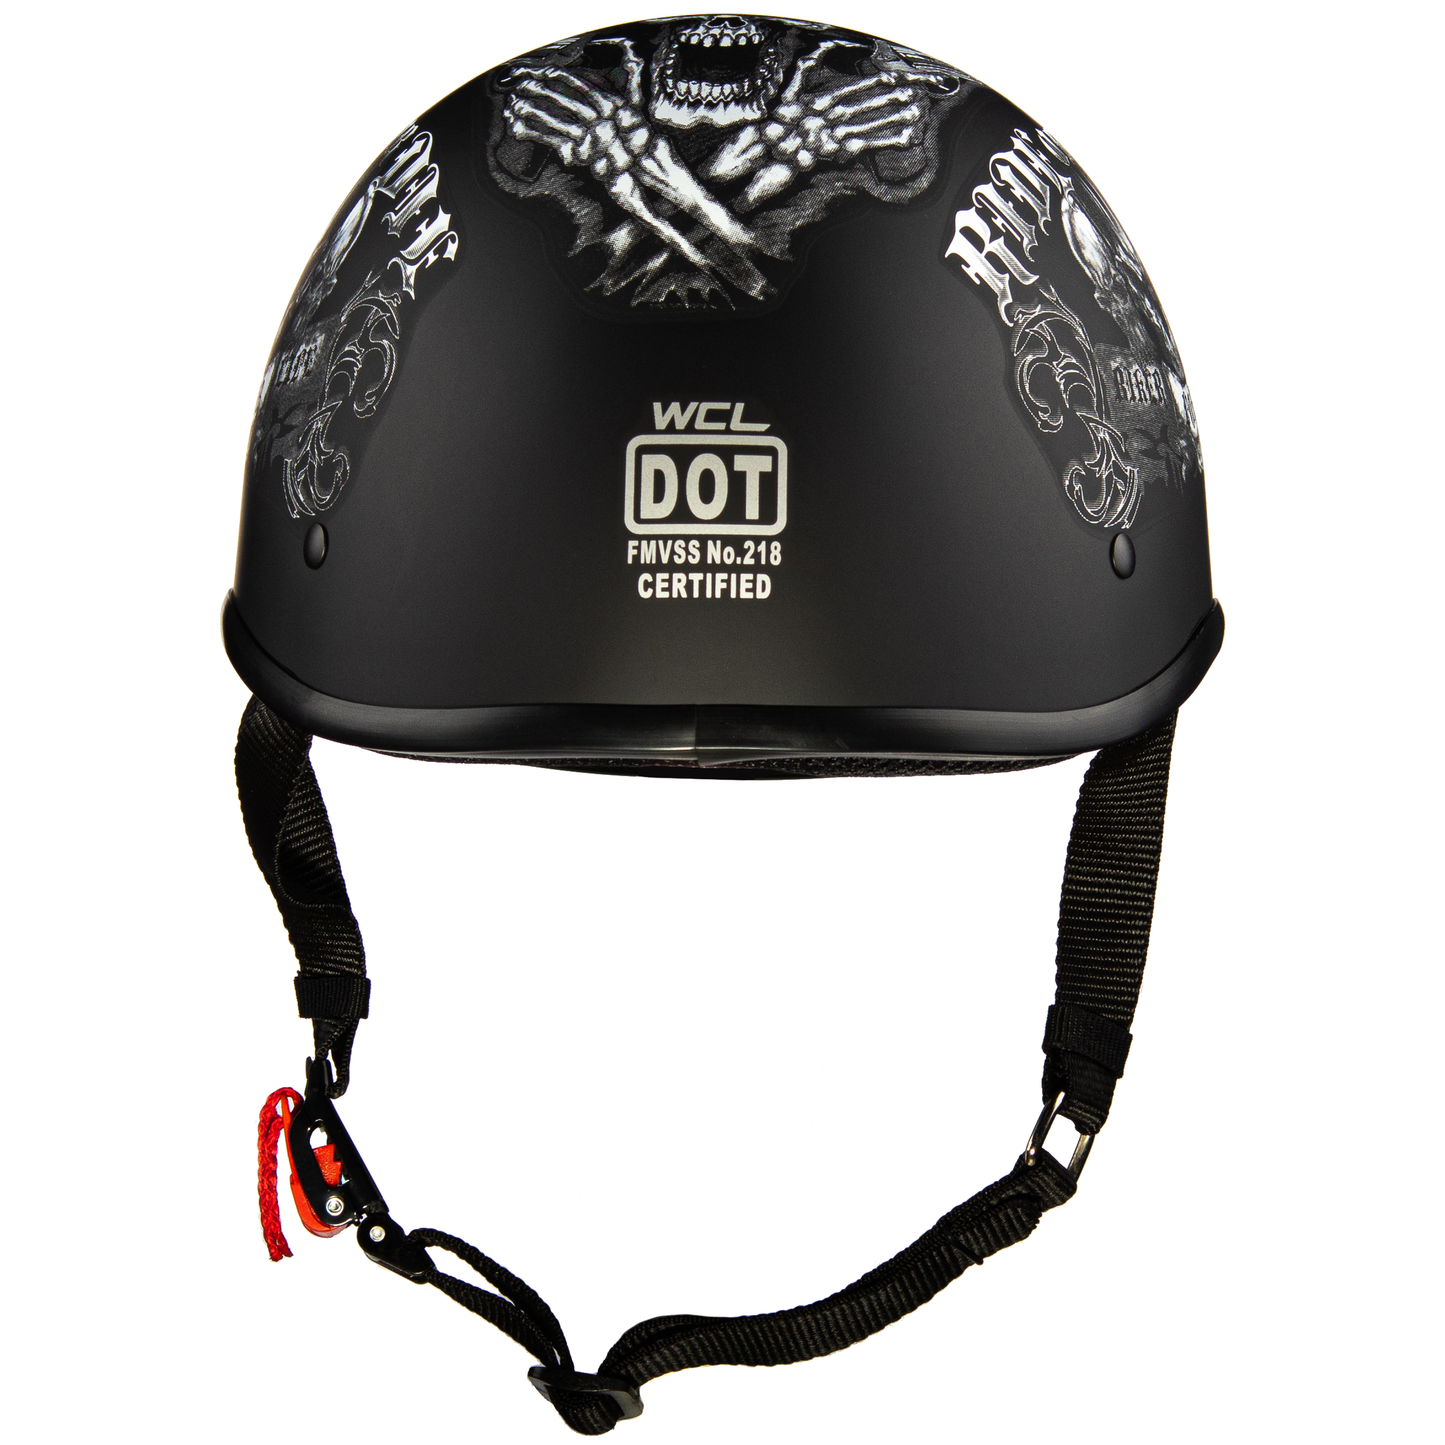 Polo Motorcycle Half Helmet  - Ride Or Die WCL